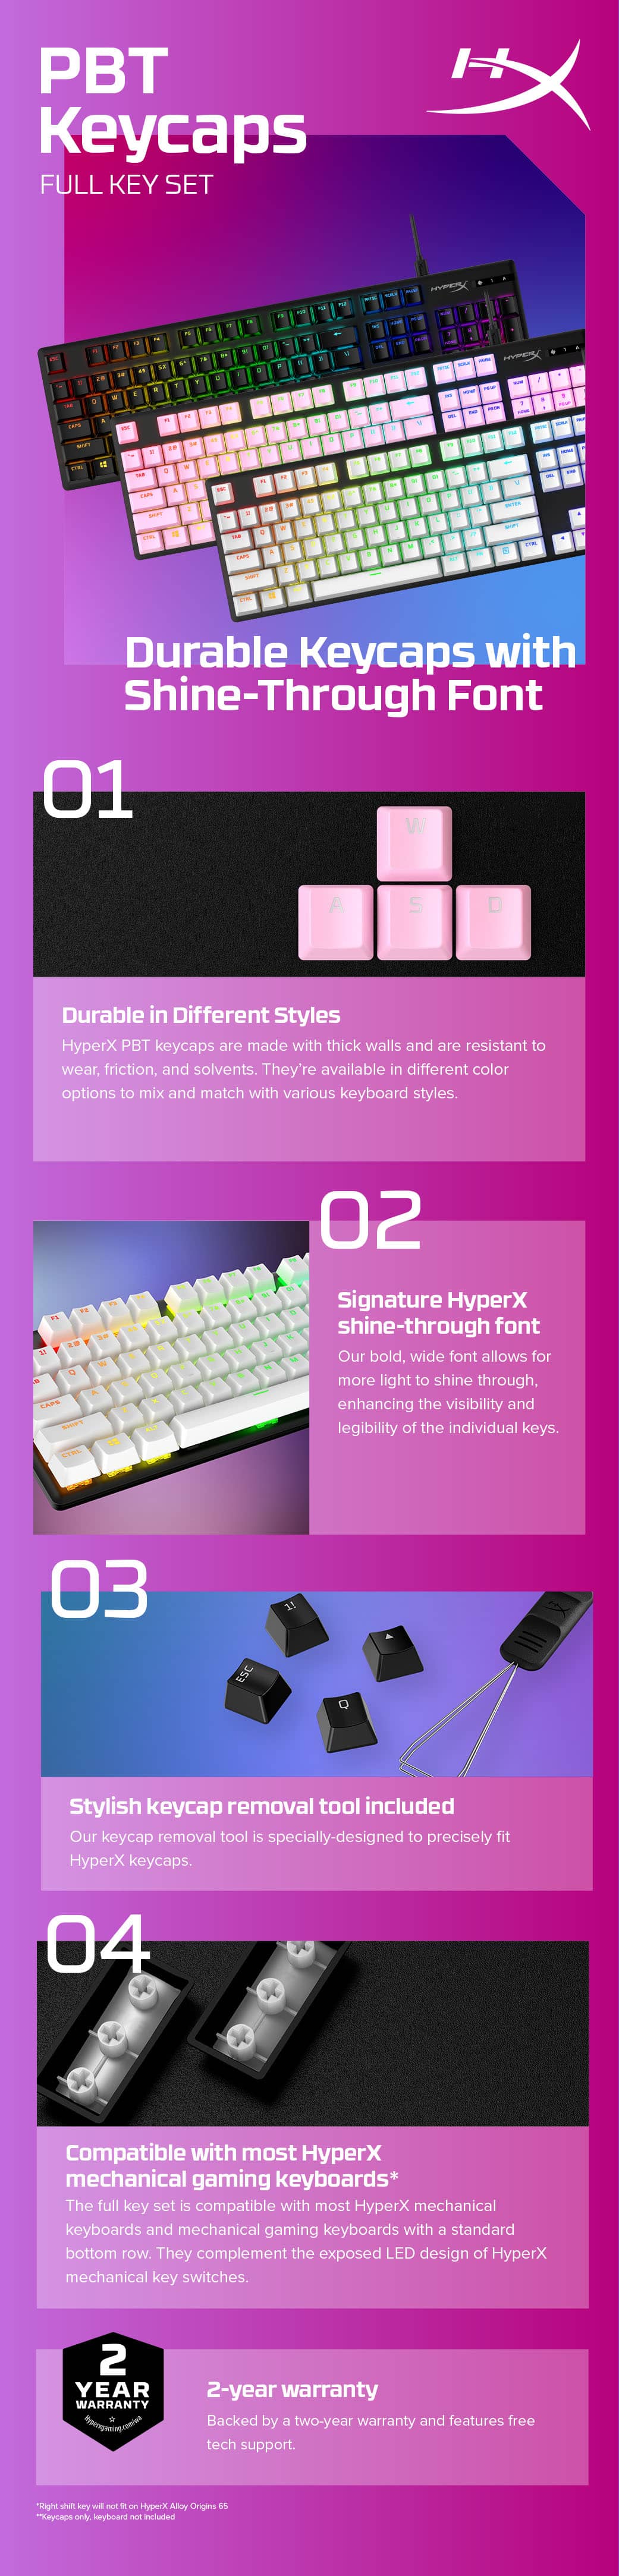 HyperX Full key Set Keycaps - PBT (Black)